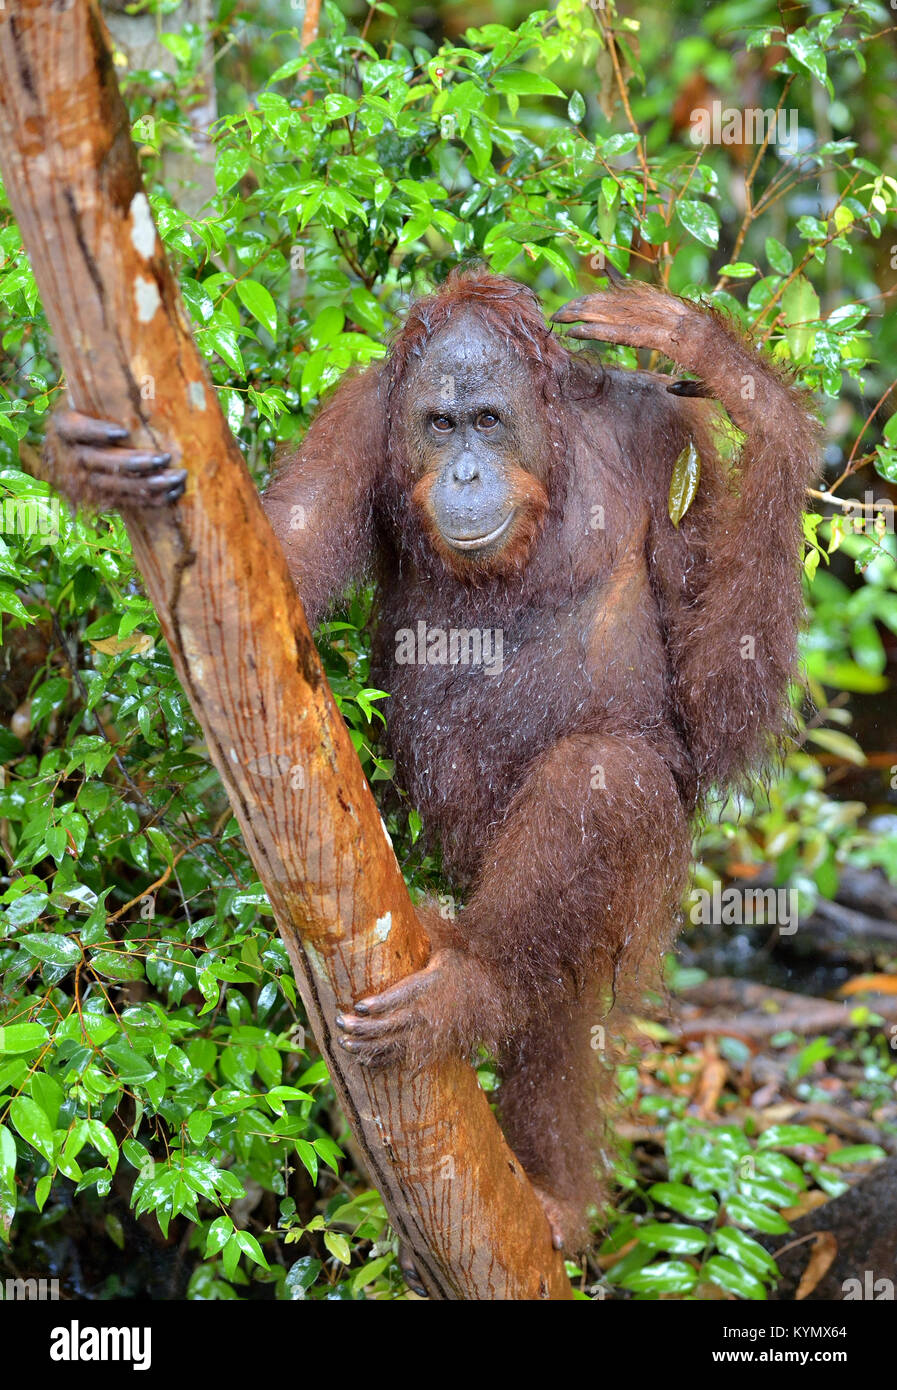 Bornesischen Orang-utan im Baum in der wilden Natur. Zentrale bornesischen Orang-utan (Pongo pygmaeus wurmbii). Natürlicher Lebensraum. Tropischer Regenwald von Borneo. Stockfoto